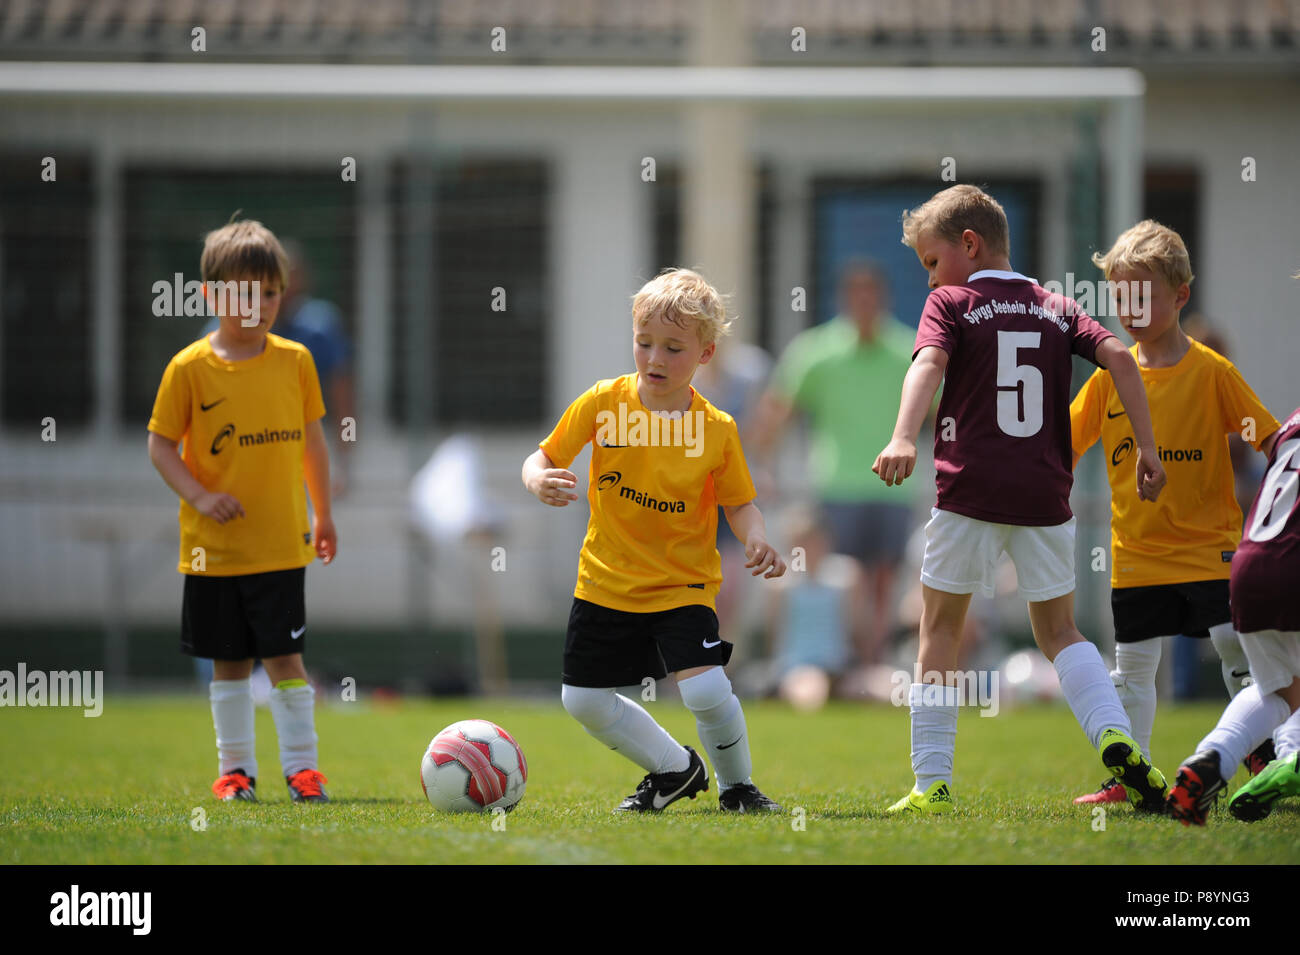 Les enfants les enfants jouer au soccer à jersey Banque D'Images